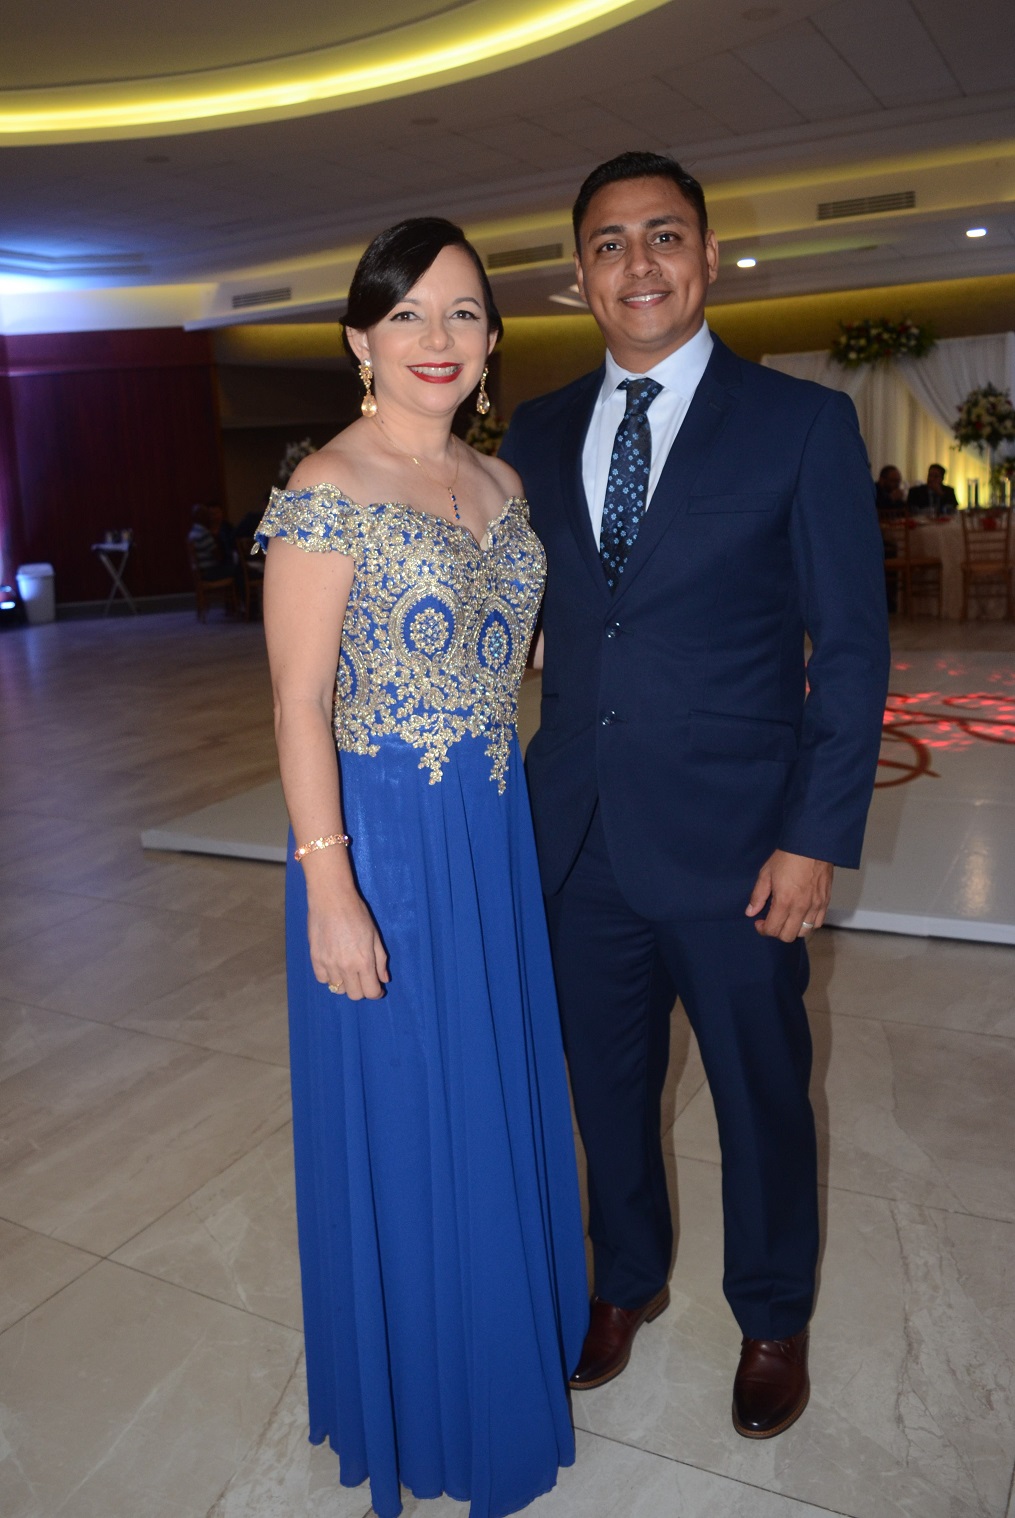 La boda de Paola Rebeca Fúnez y Raúl Humberto Fuentes un recuerdo memorable